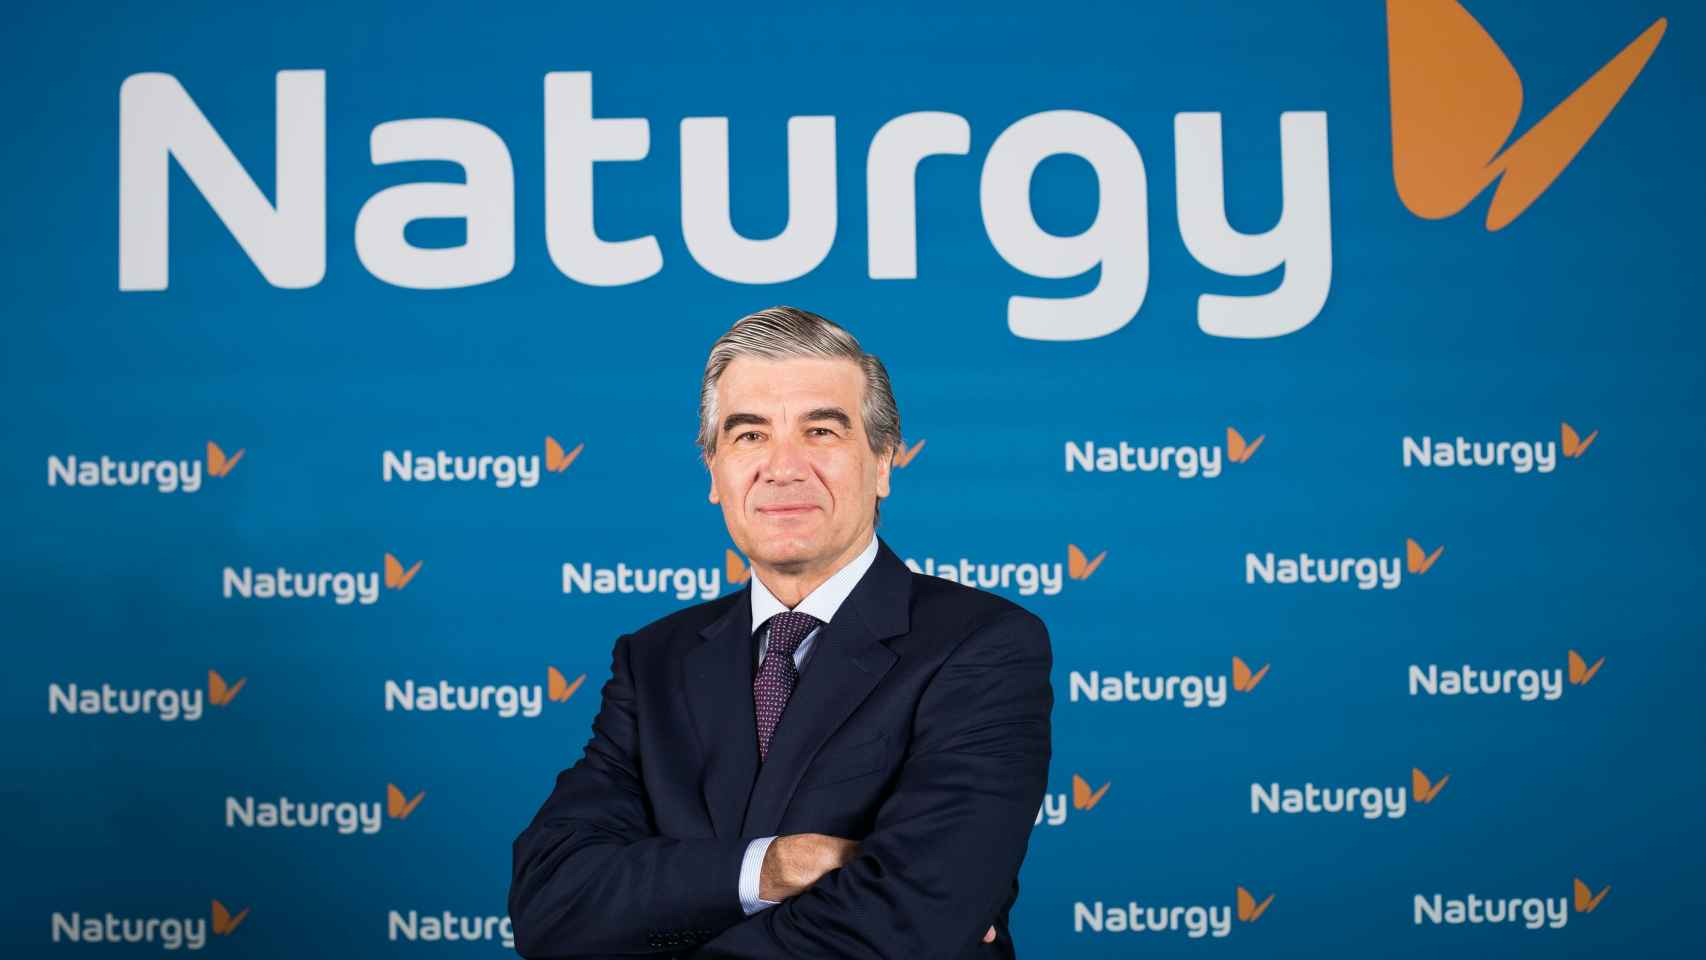 Naturgy casi duplica su beneficio en el primer trimestre, con 383 millones